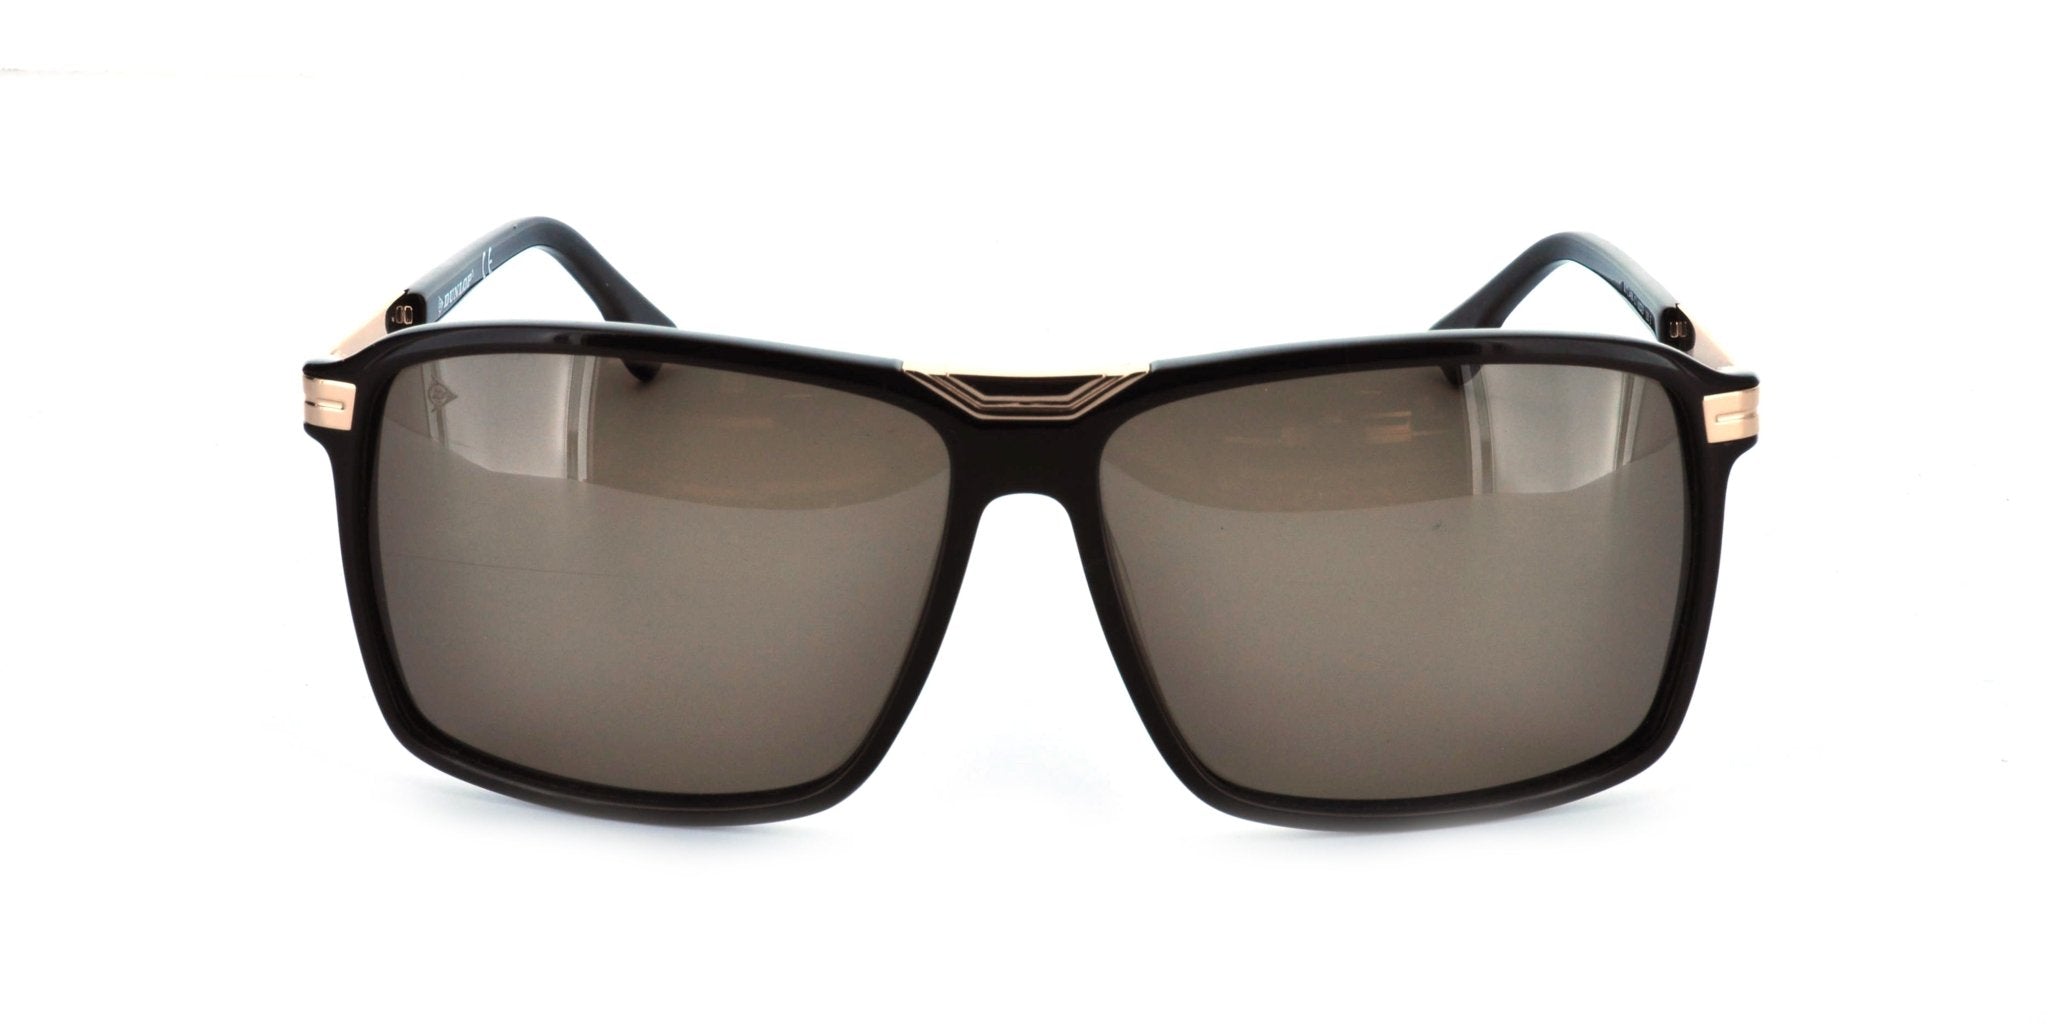 Takreem Dunlop DG-3498-C1 Men's Sunglasses - Style and Comfort Combined - #shoTakreem Dunlop DG-3498-C1 Men's Sunglasses - Style and Comfort Combinedp_name#Takreem Dunlop DG-3498-C1 Men's Sunglasses - Style and Comfort CombinedSunglassesDunlopTakreem.joDG 3498 c1BrownAcetateMenTakreem Dunlop DG-3498-C1 Men's Sunglasses - Style and Comfort Combined - Takreem.jo